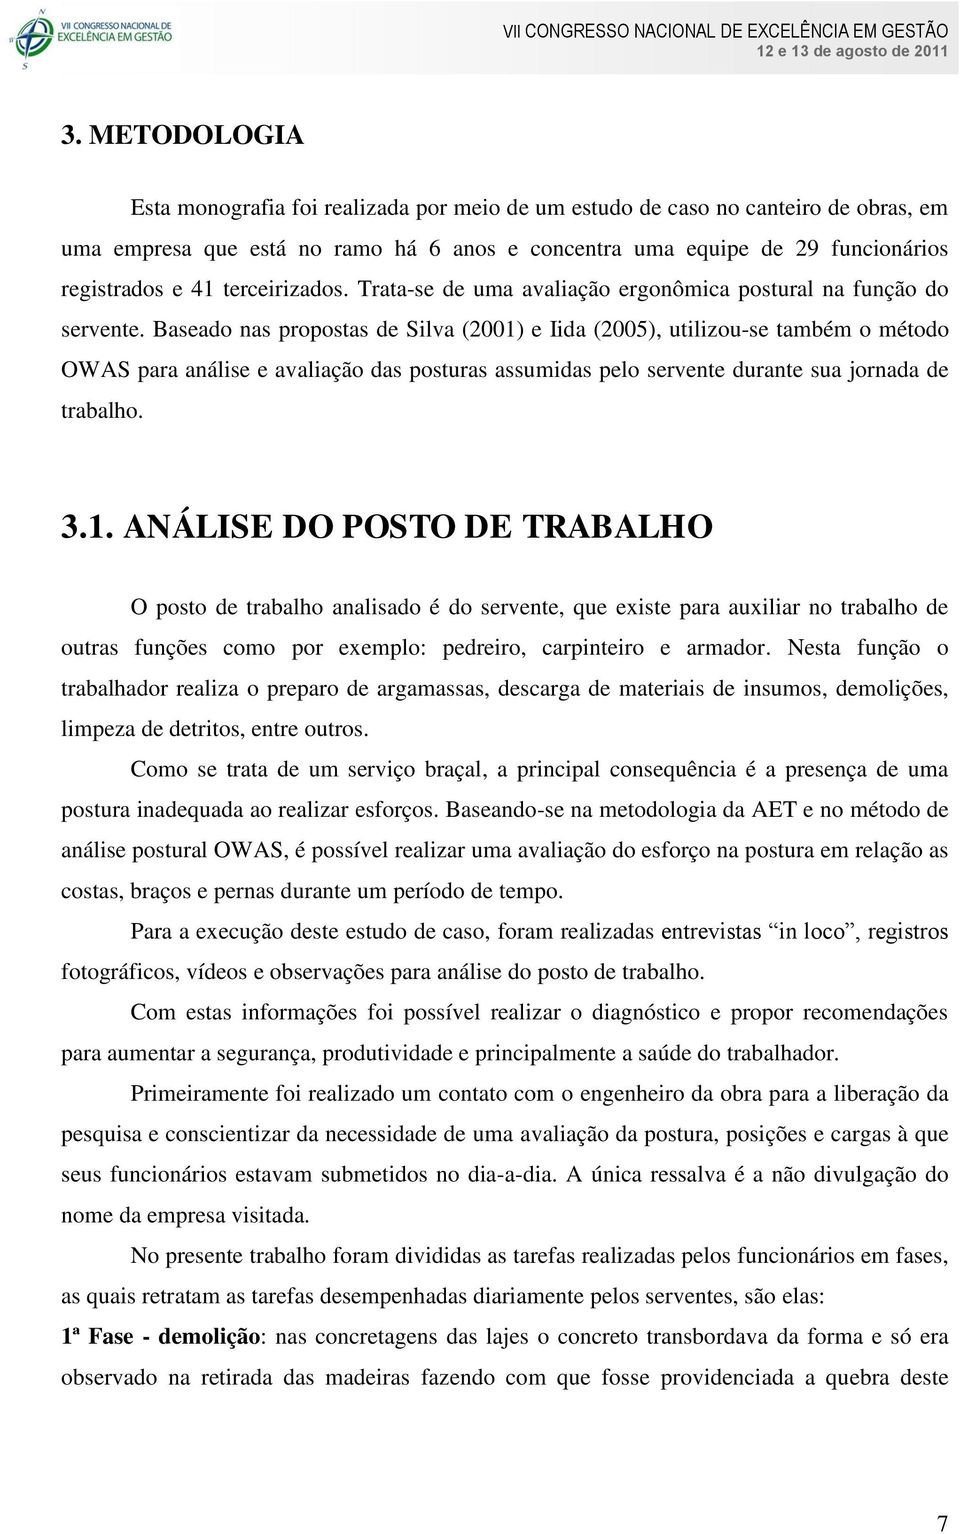 Baseado nas propostas de Silva (2001)